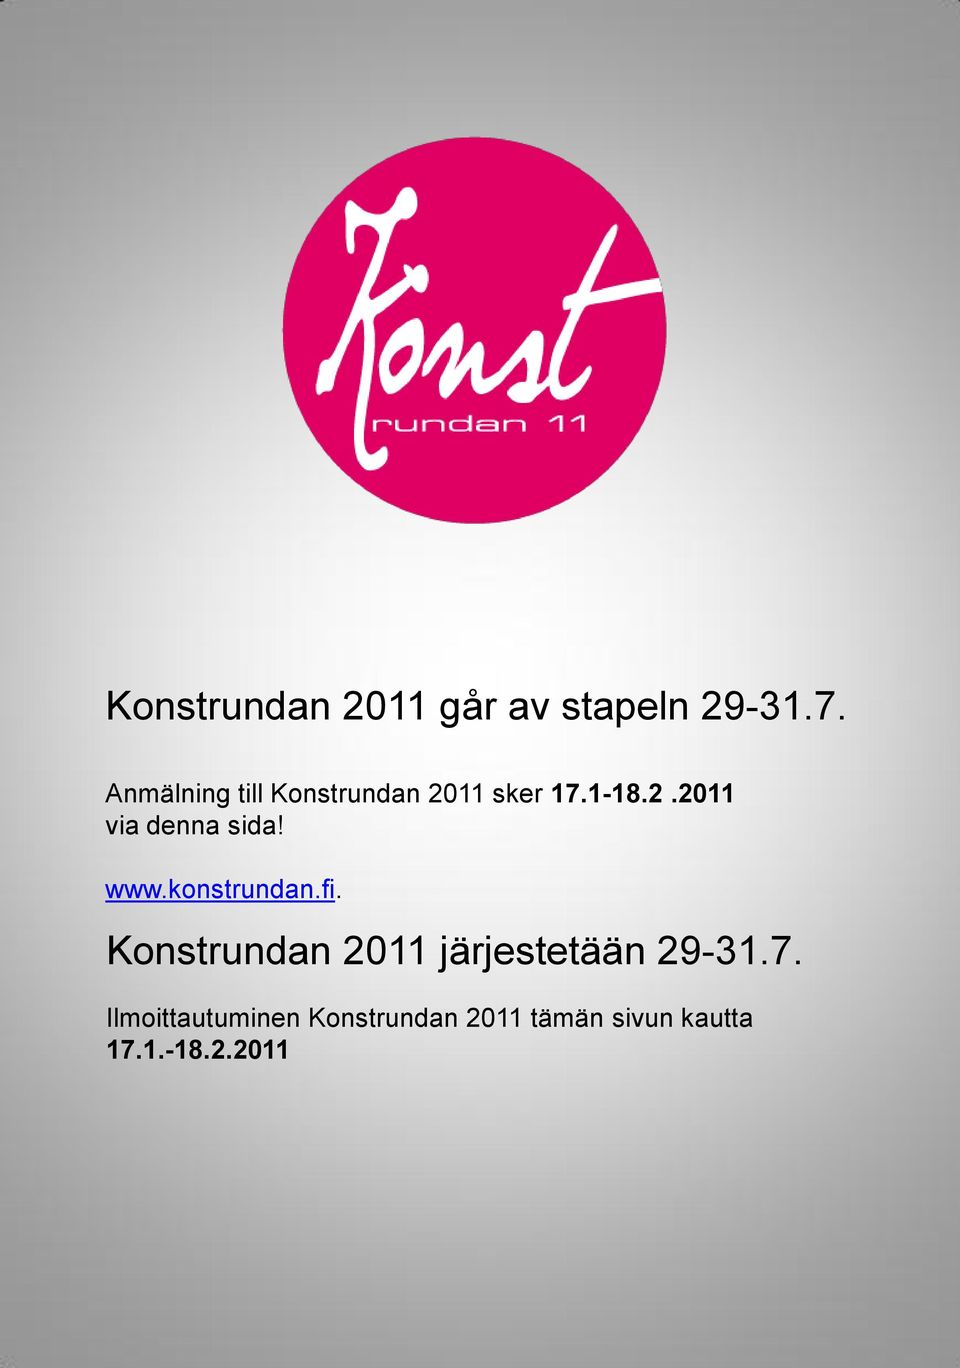 www.konstrundan.fi. Konstrundan 2011 järjestetään 29-31.7.